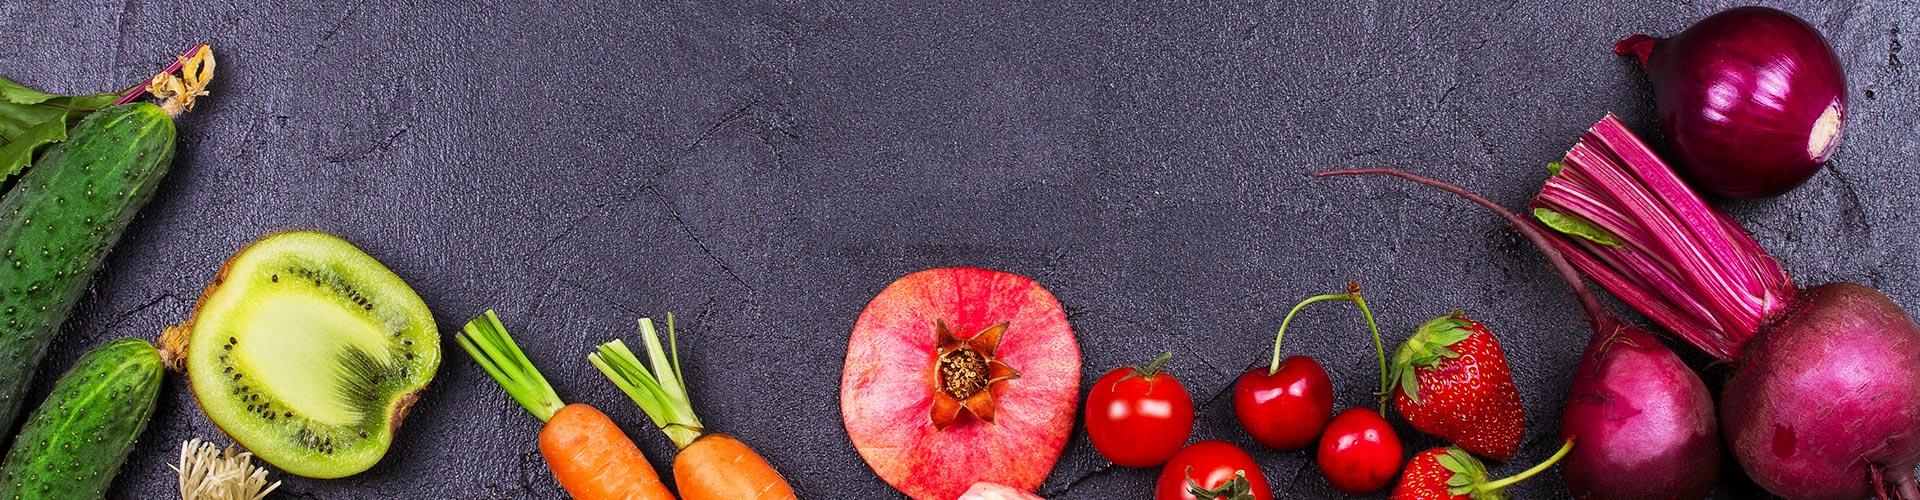 Verschiedenes Obst und Gemüse auf dunklem Hintergrund